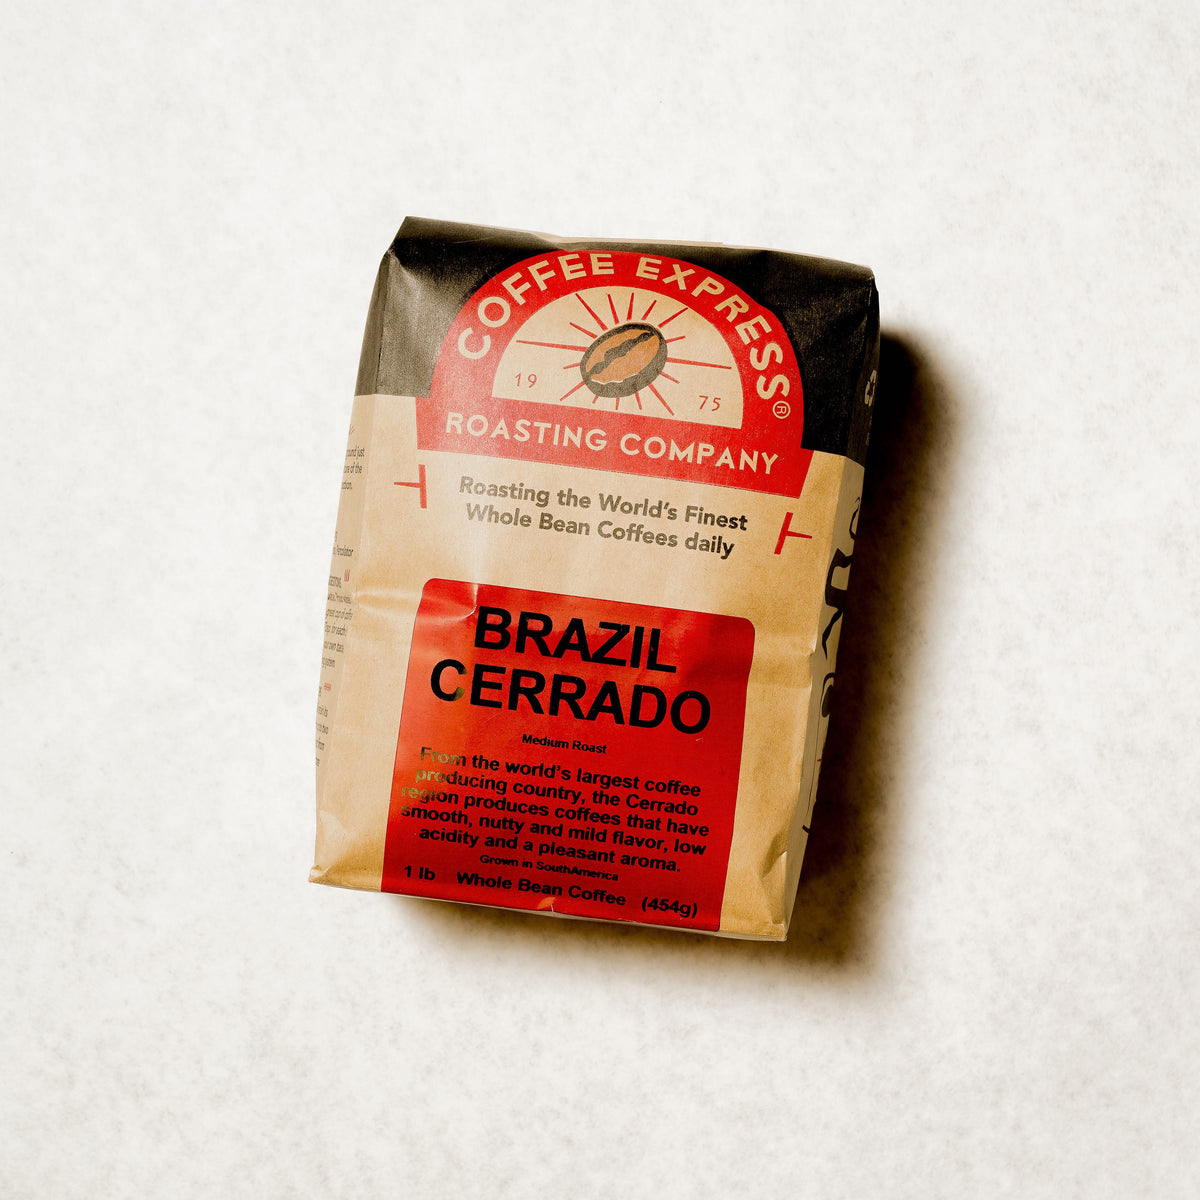 Brazil Cerrado Coffee